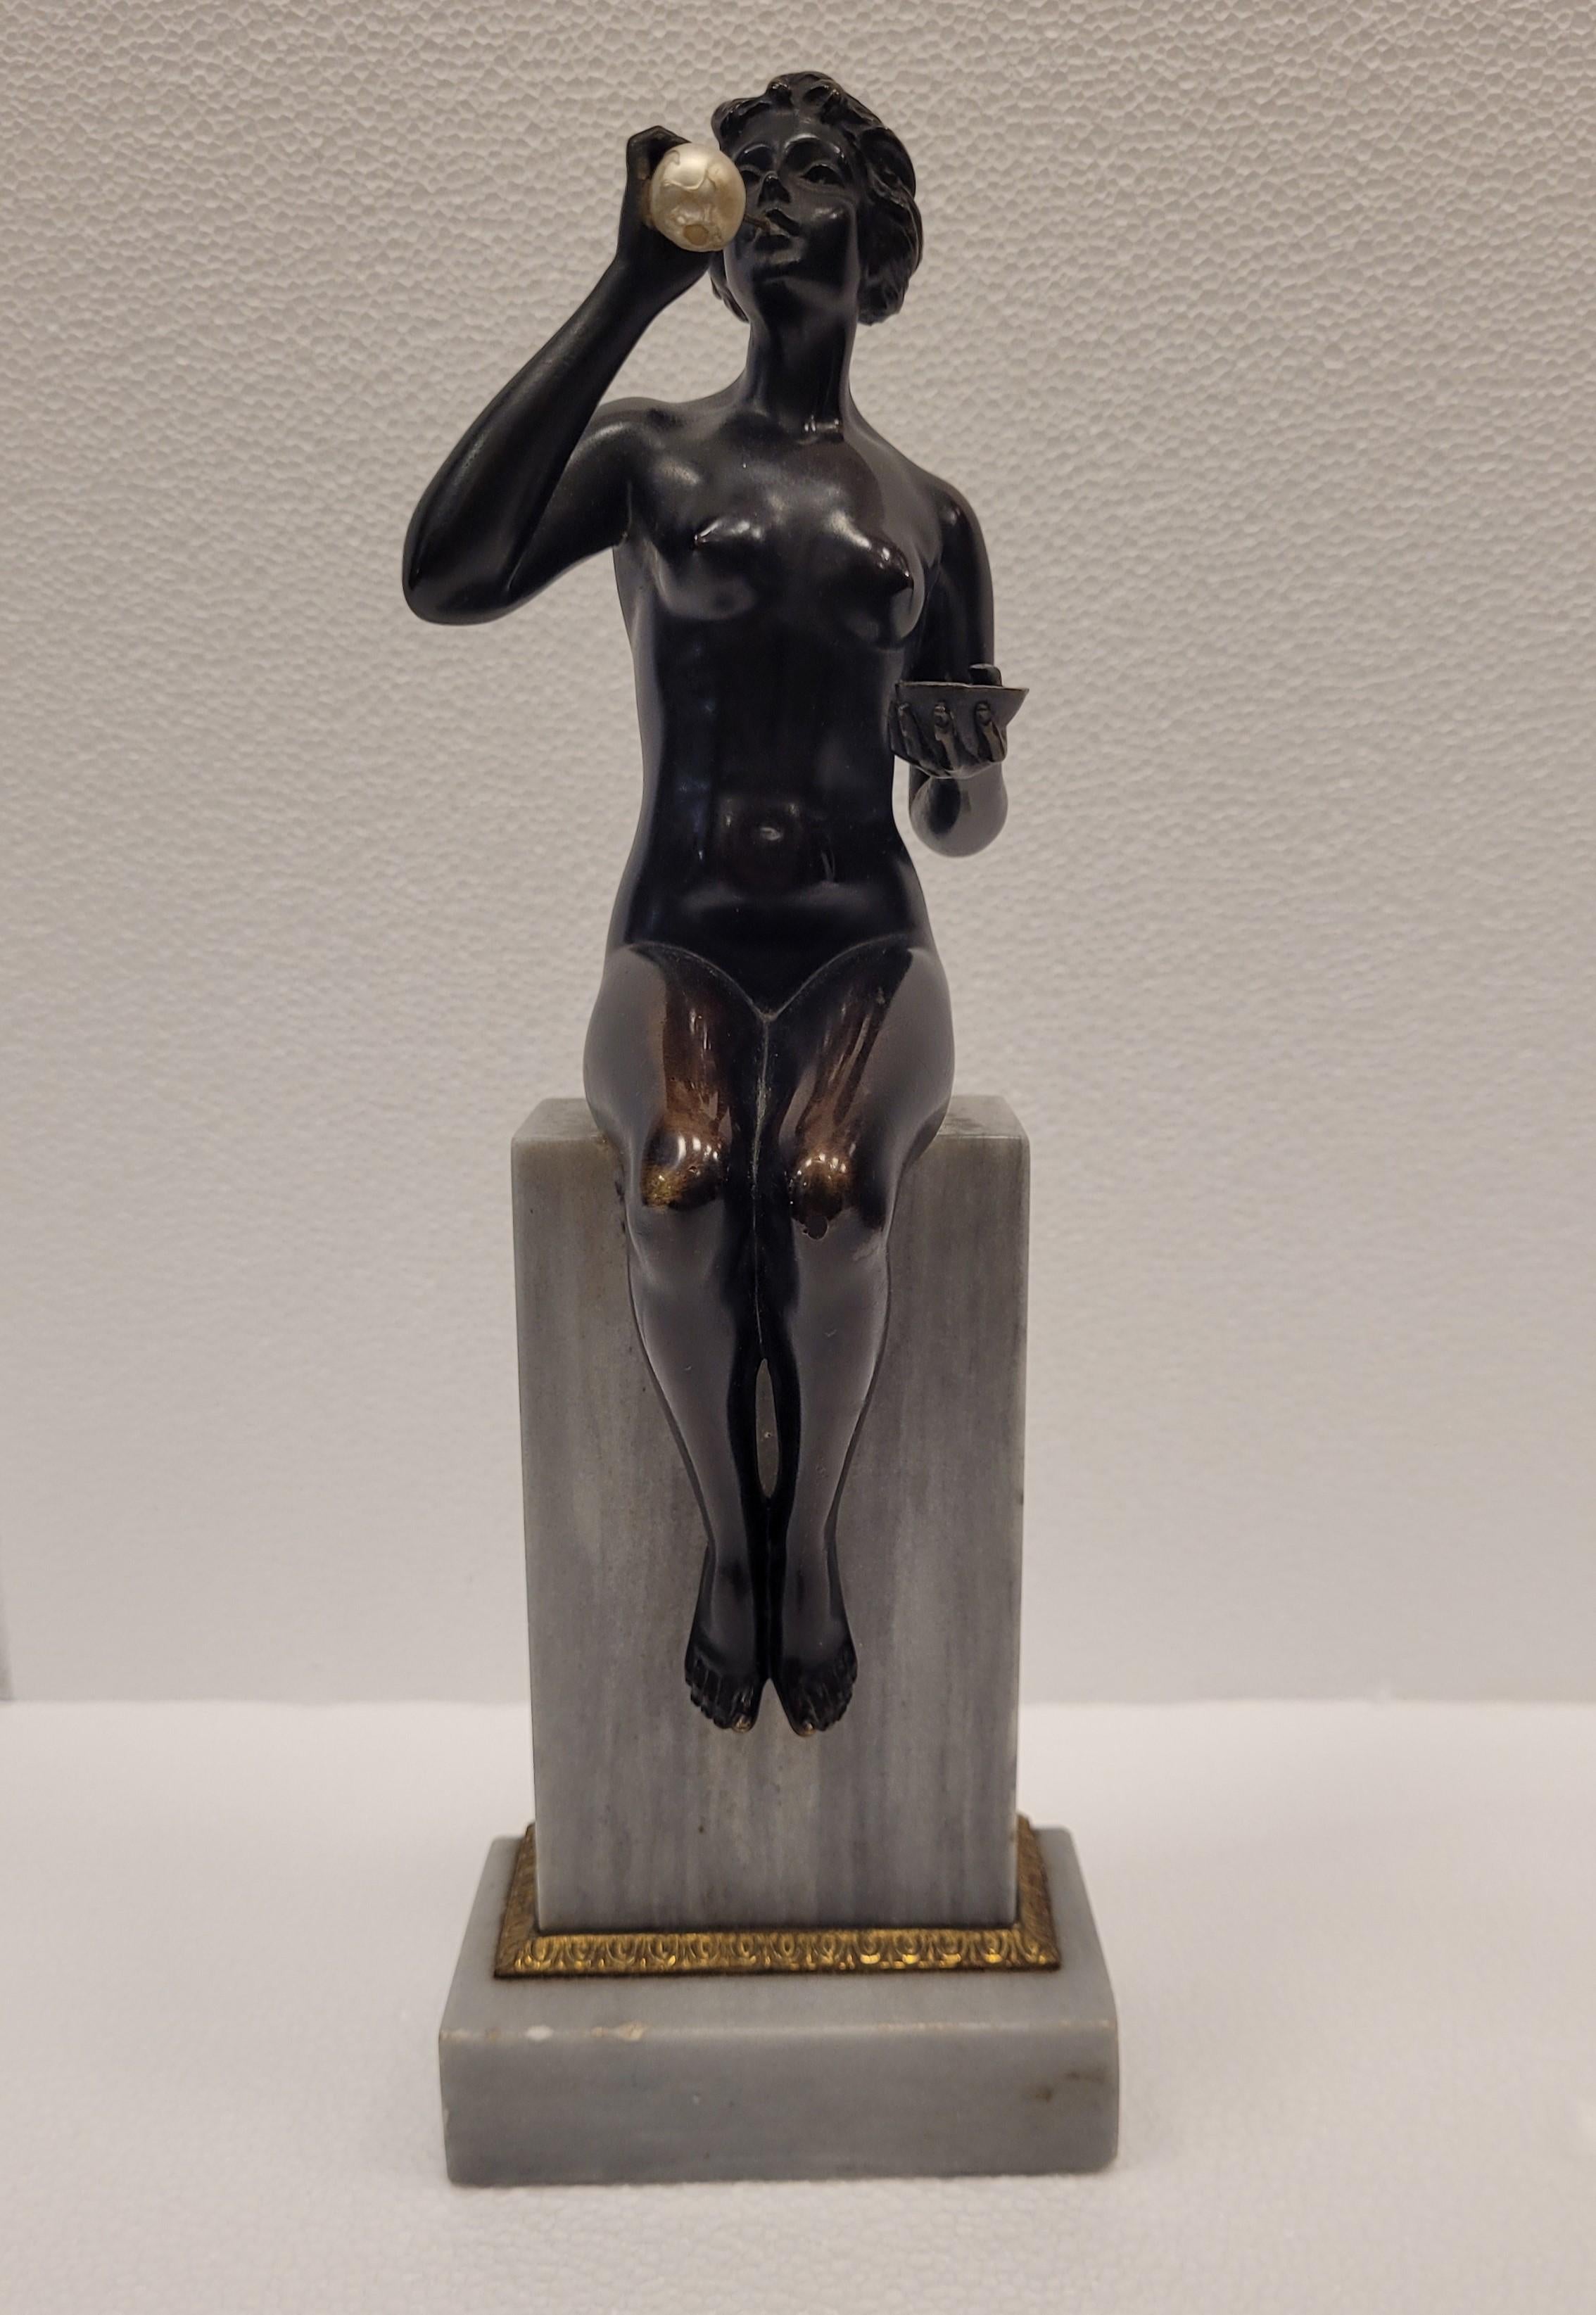 Sehr schön  und raffinierte antike dunkel patinierte massive Bronzeskulptur, die eine nackte Frau darstellt, die Seifenblasen bläst
Sie ist deutschen Ursprungs und stammt aus der Zeit um 1920. Nicht signiert.

Diese schöne Frau sitzt auf einem